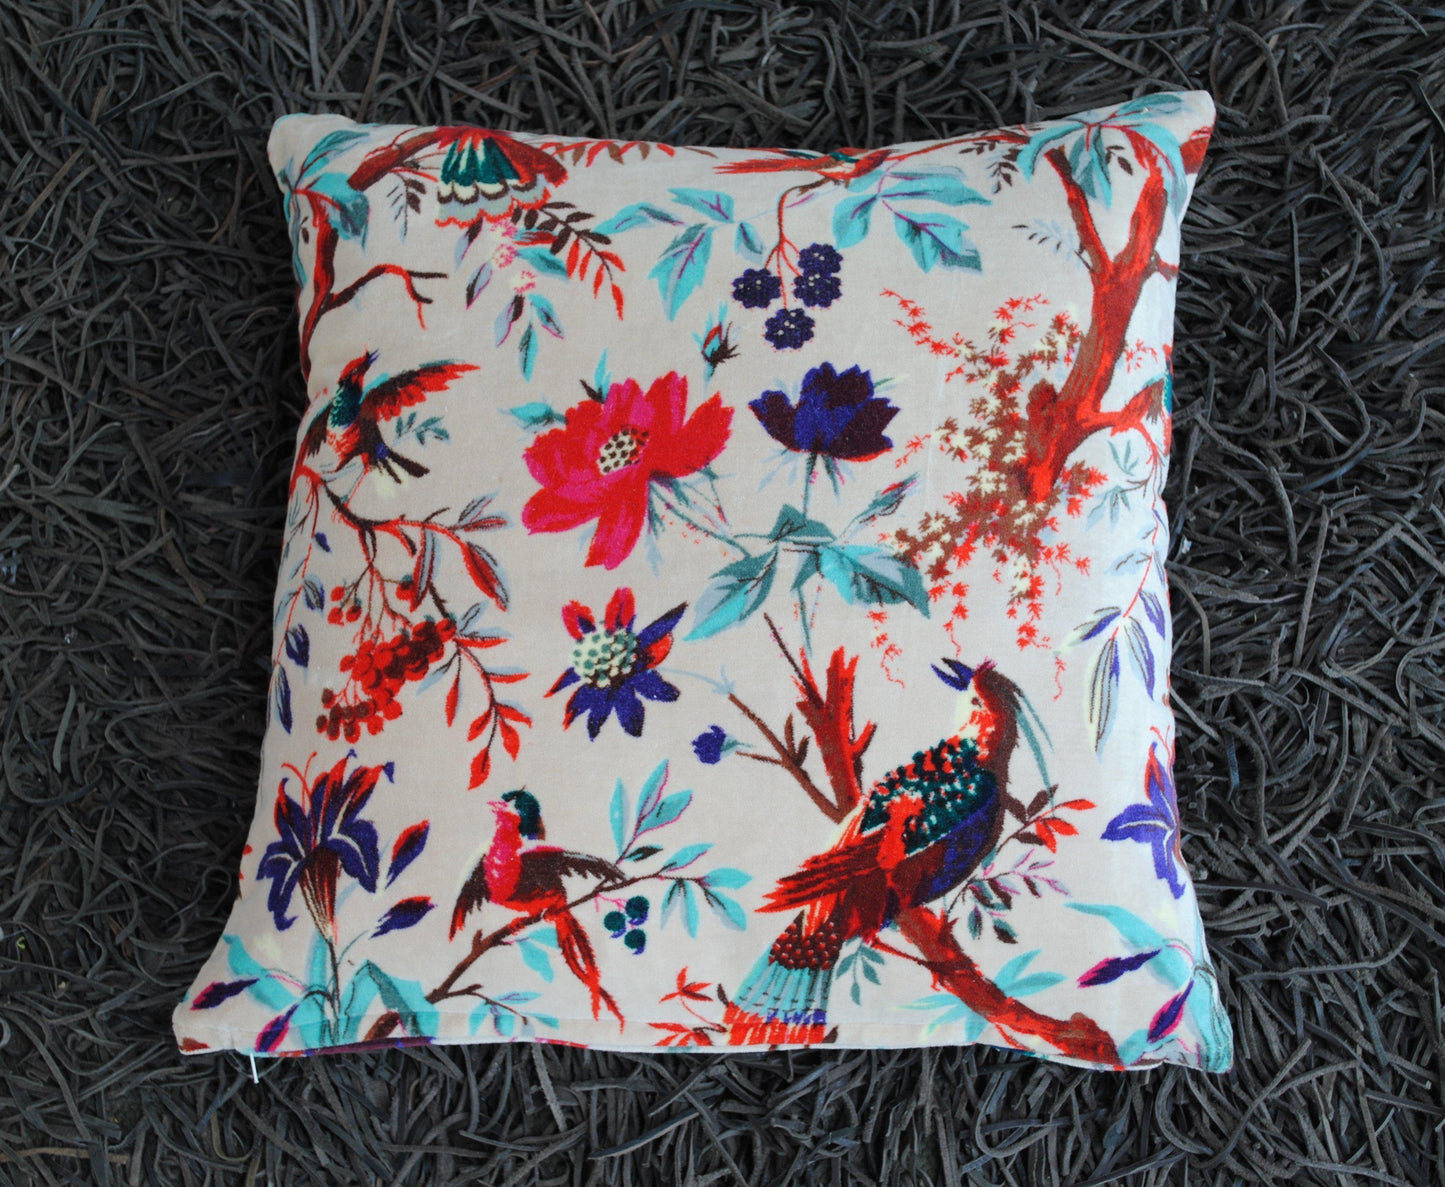 Birds of paradise Velvet Cushion Cover-White - The Teal Thread